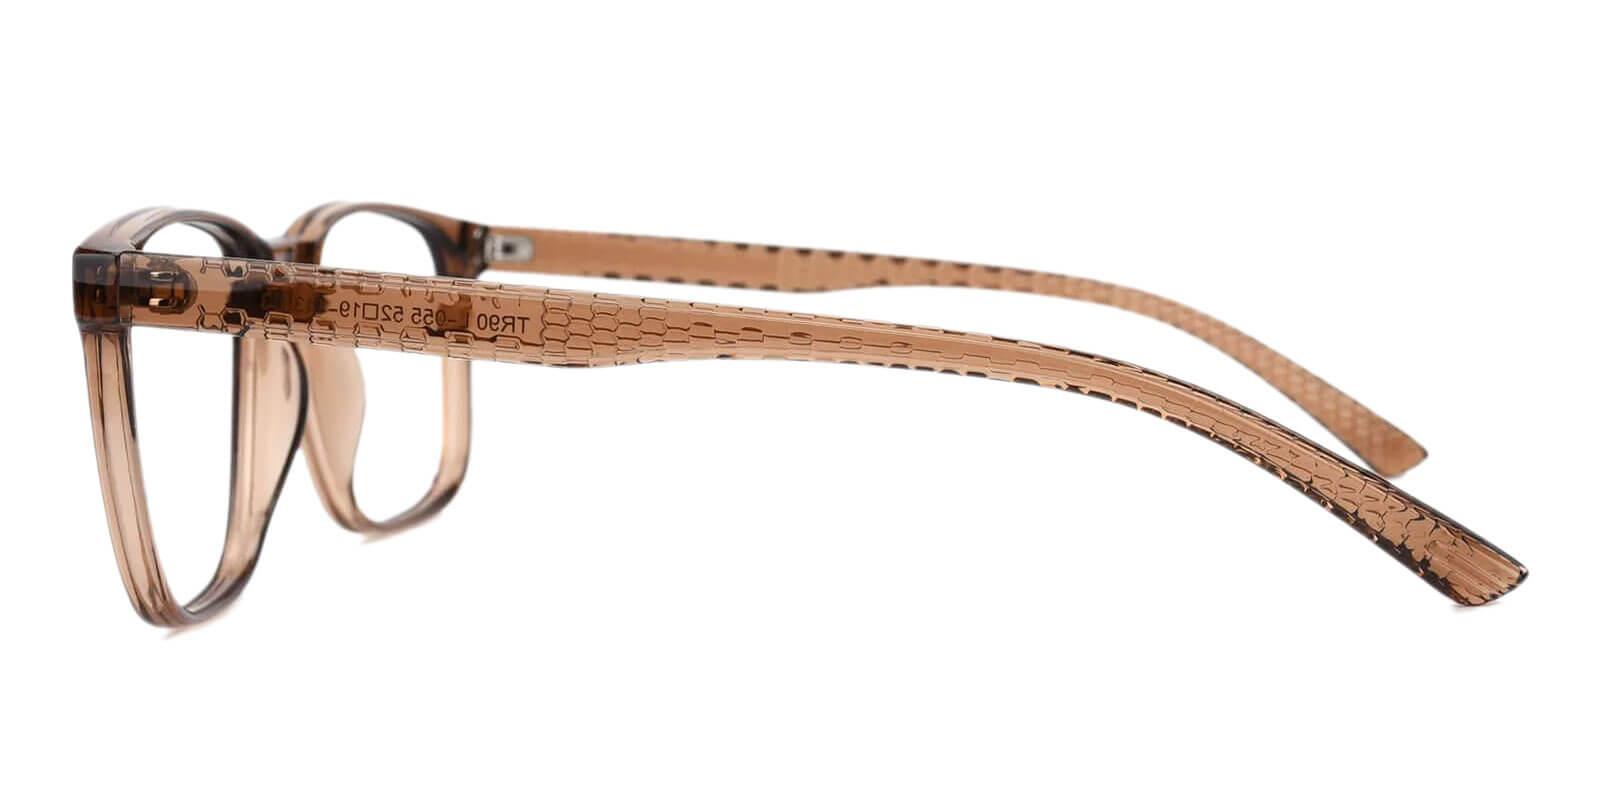 Machel Brown TR Eyeglasses , UniversalBridgeFit Frames from ABBE Glasses